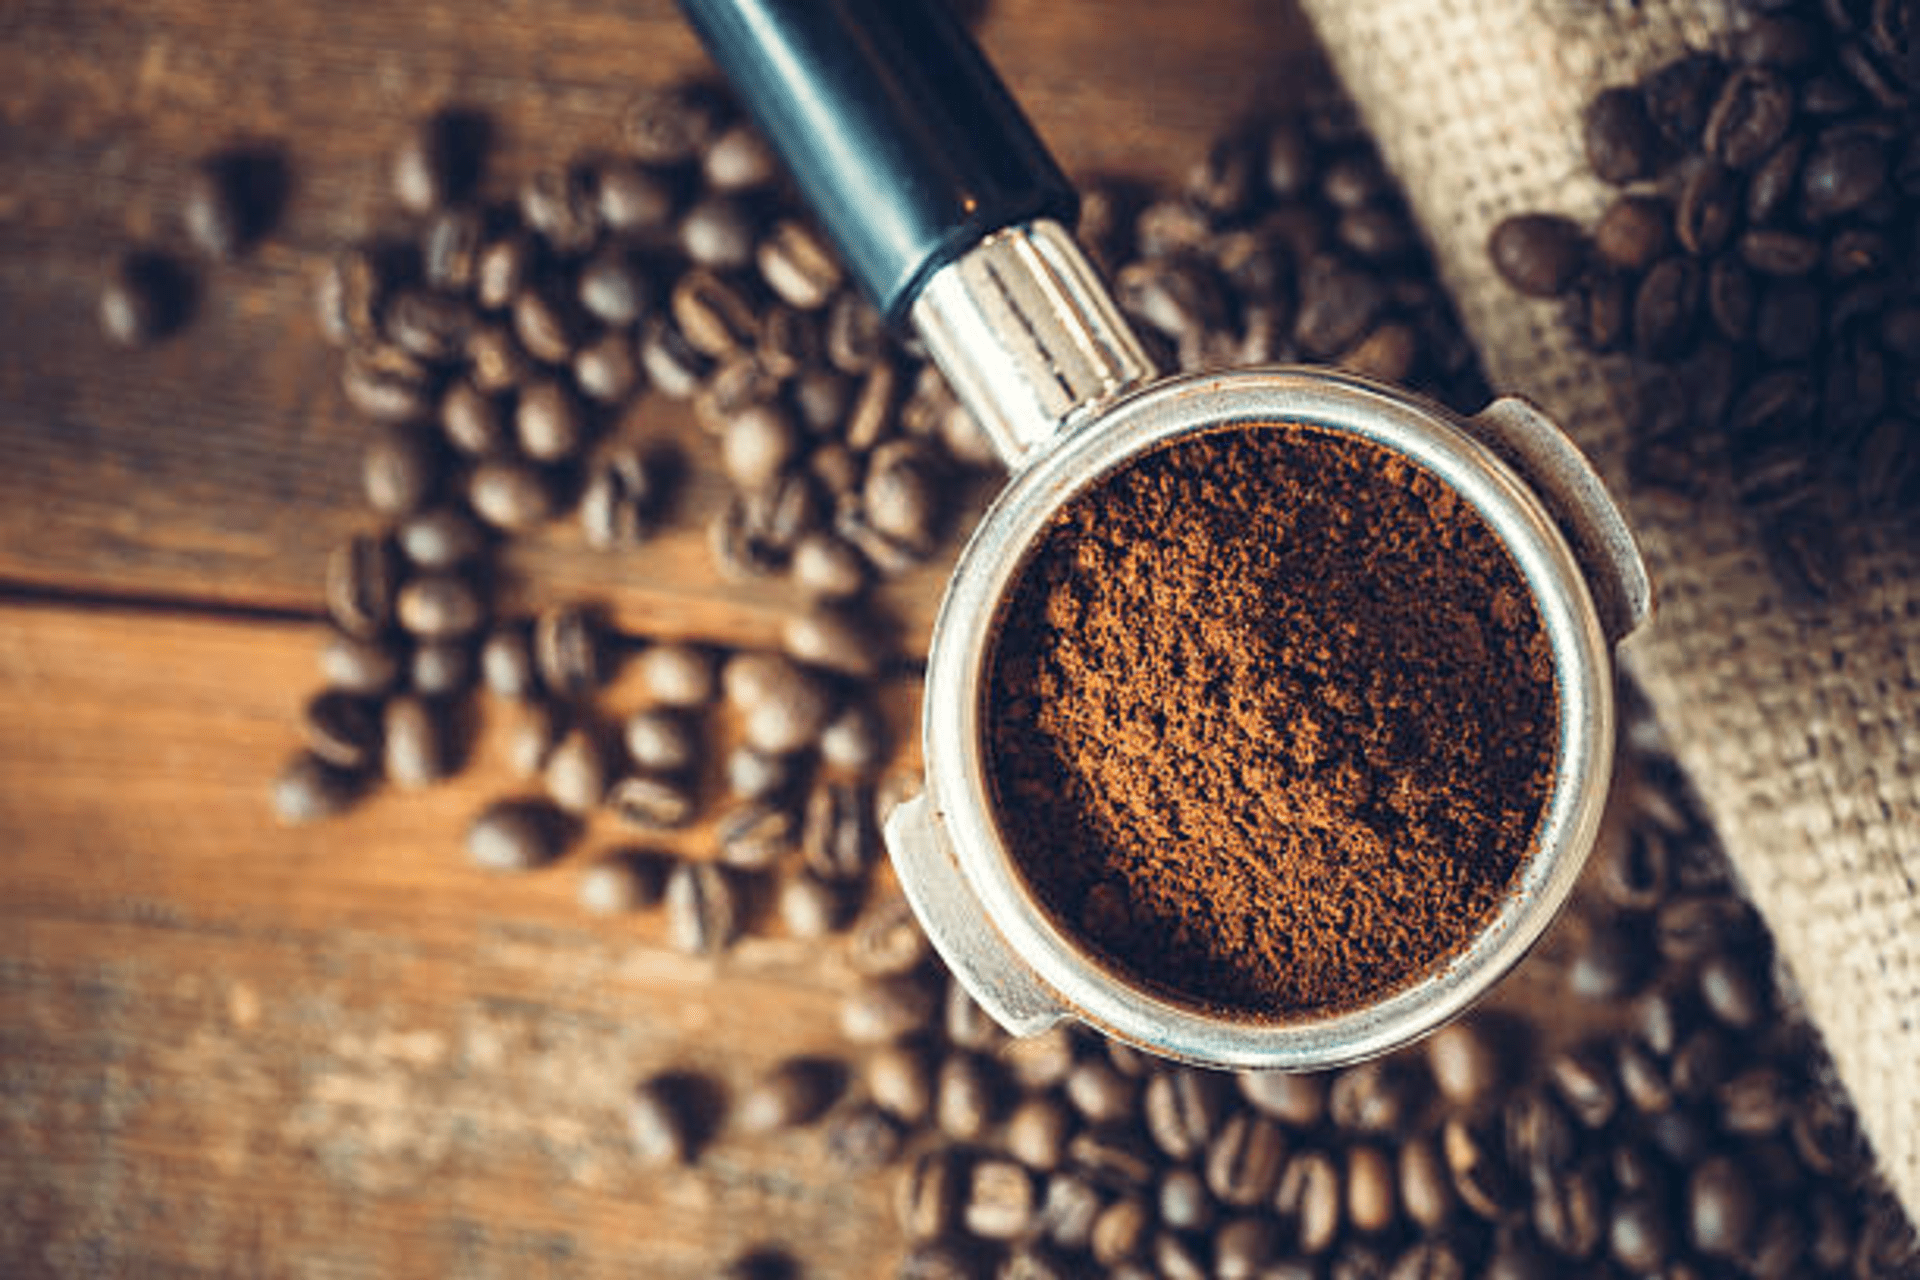 Berikut adalah beberapa manfaat minum kopi pahit bagi tubuh yang perlu diketahui, salah satunya adalah dapat menurunkan risiko kanker